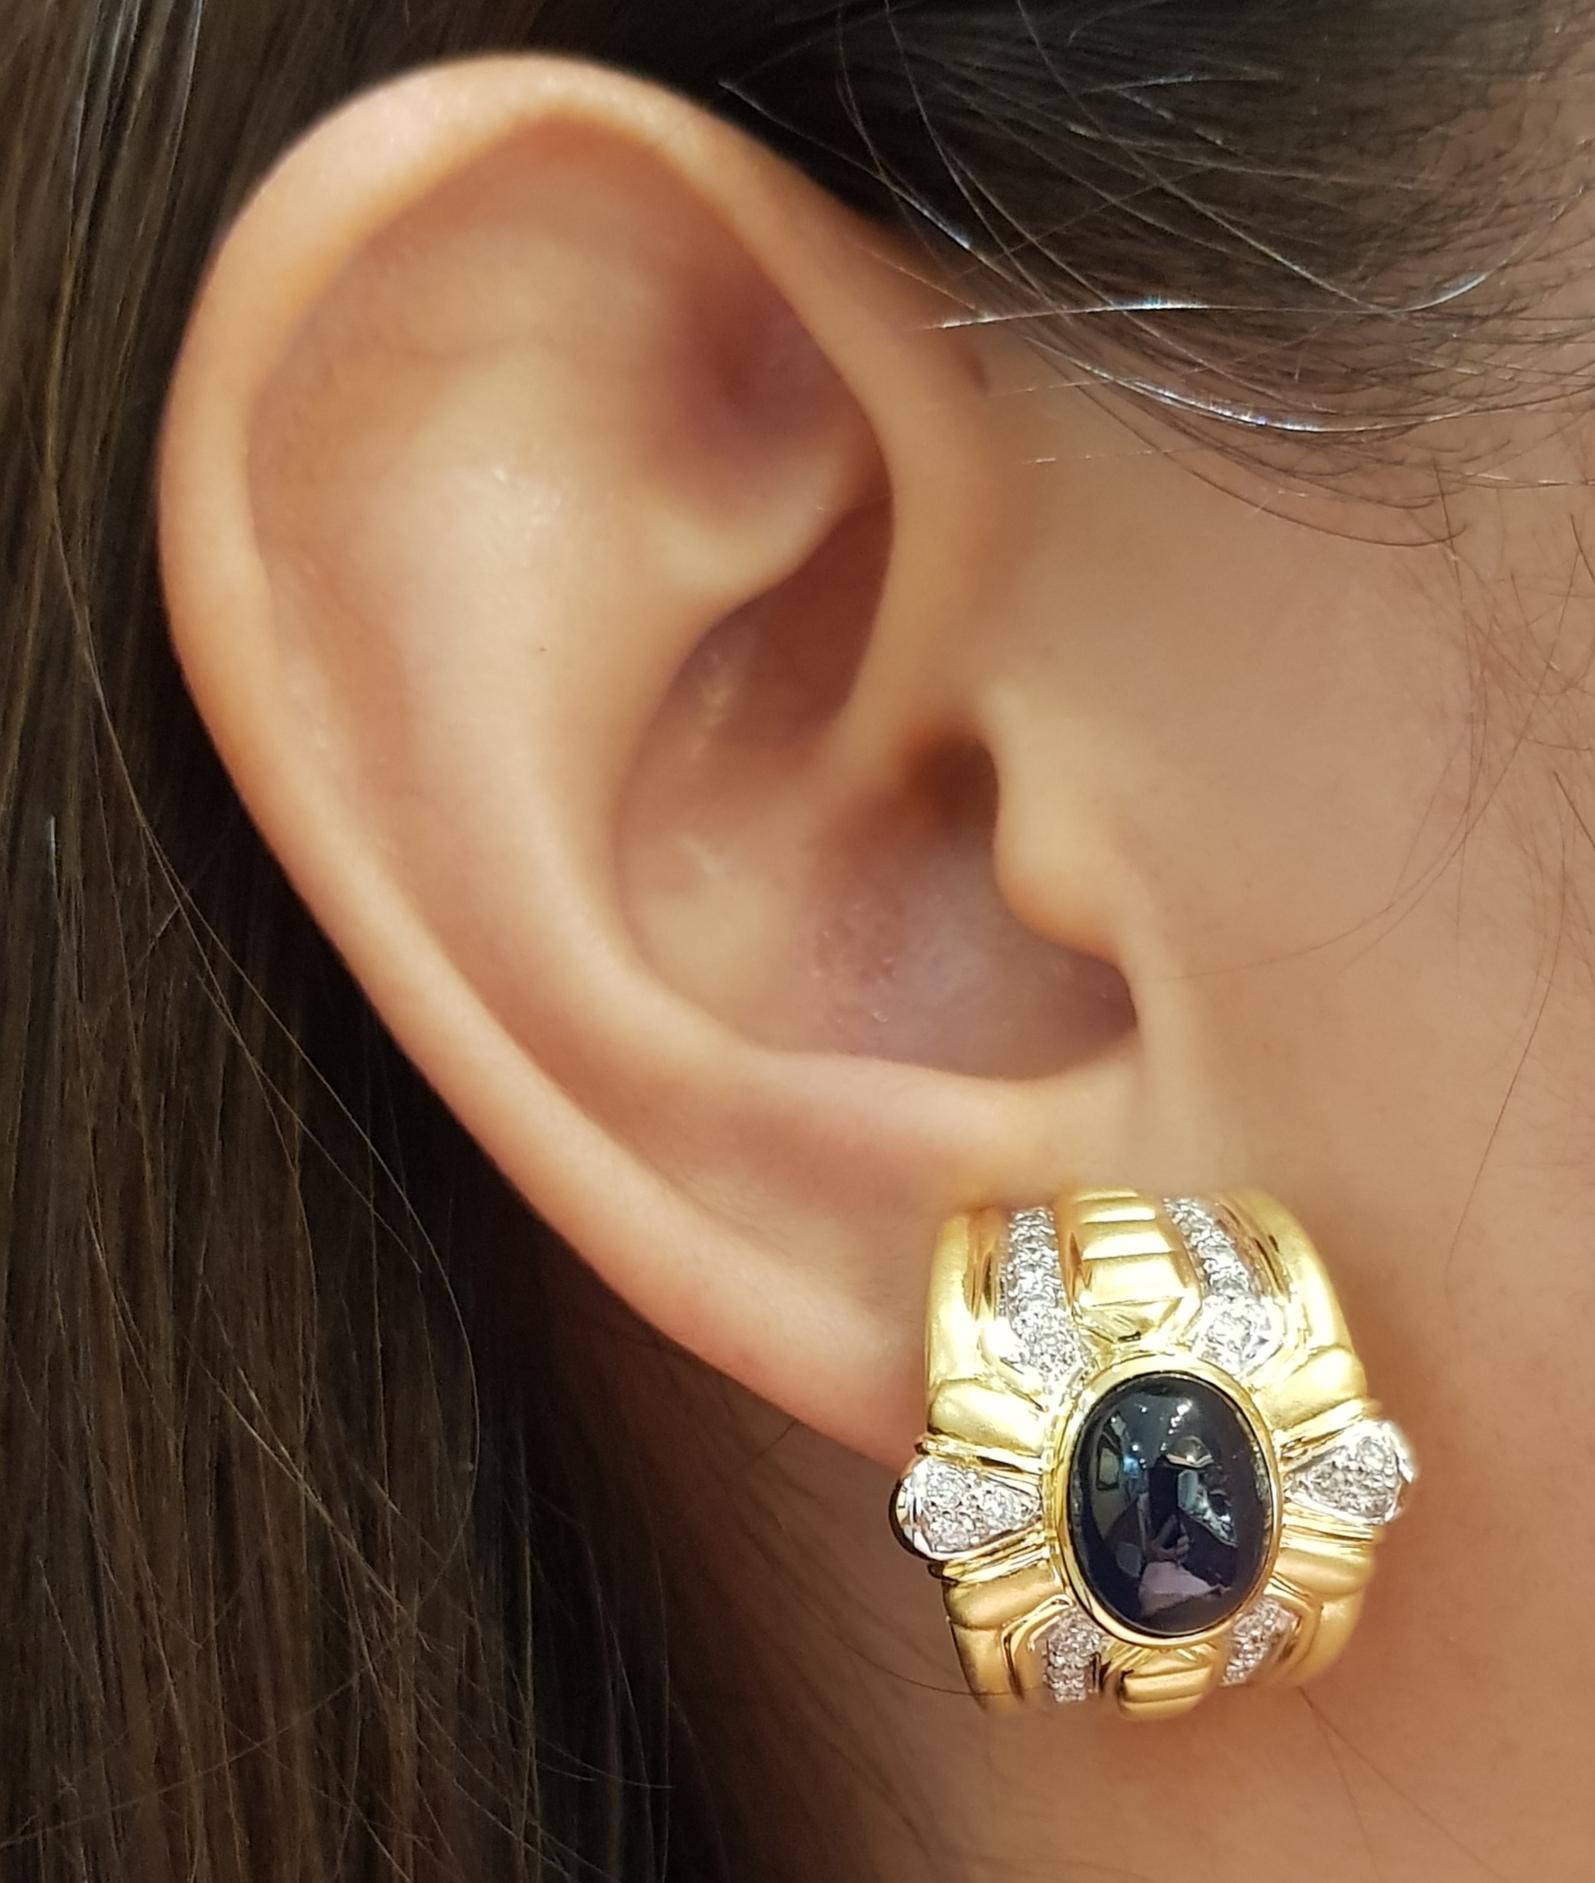 Cabochon Blauer Saphir 9,41 Karat mit Diamant 0,71 Karat Ohrringe in 18 Karat Goldfassung

Breite:  2,0 cm 
Länge: 2,2 cm
Gesamtgewicht: 29,19  Gramm

